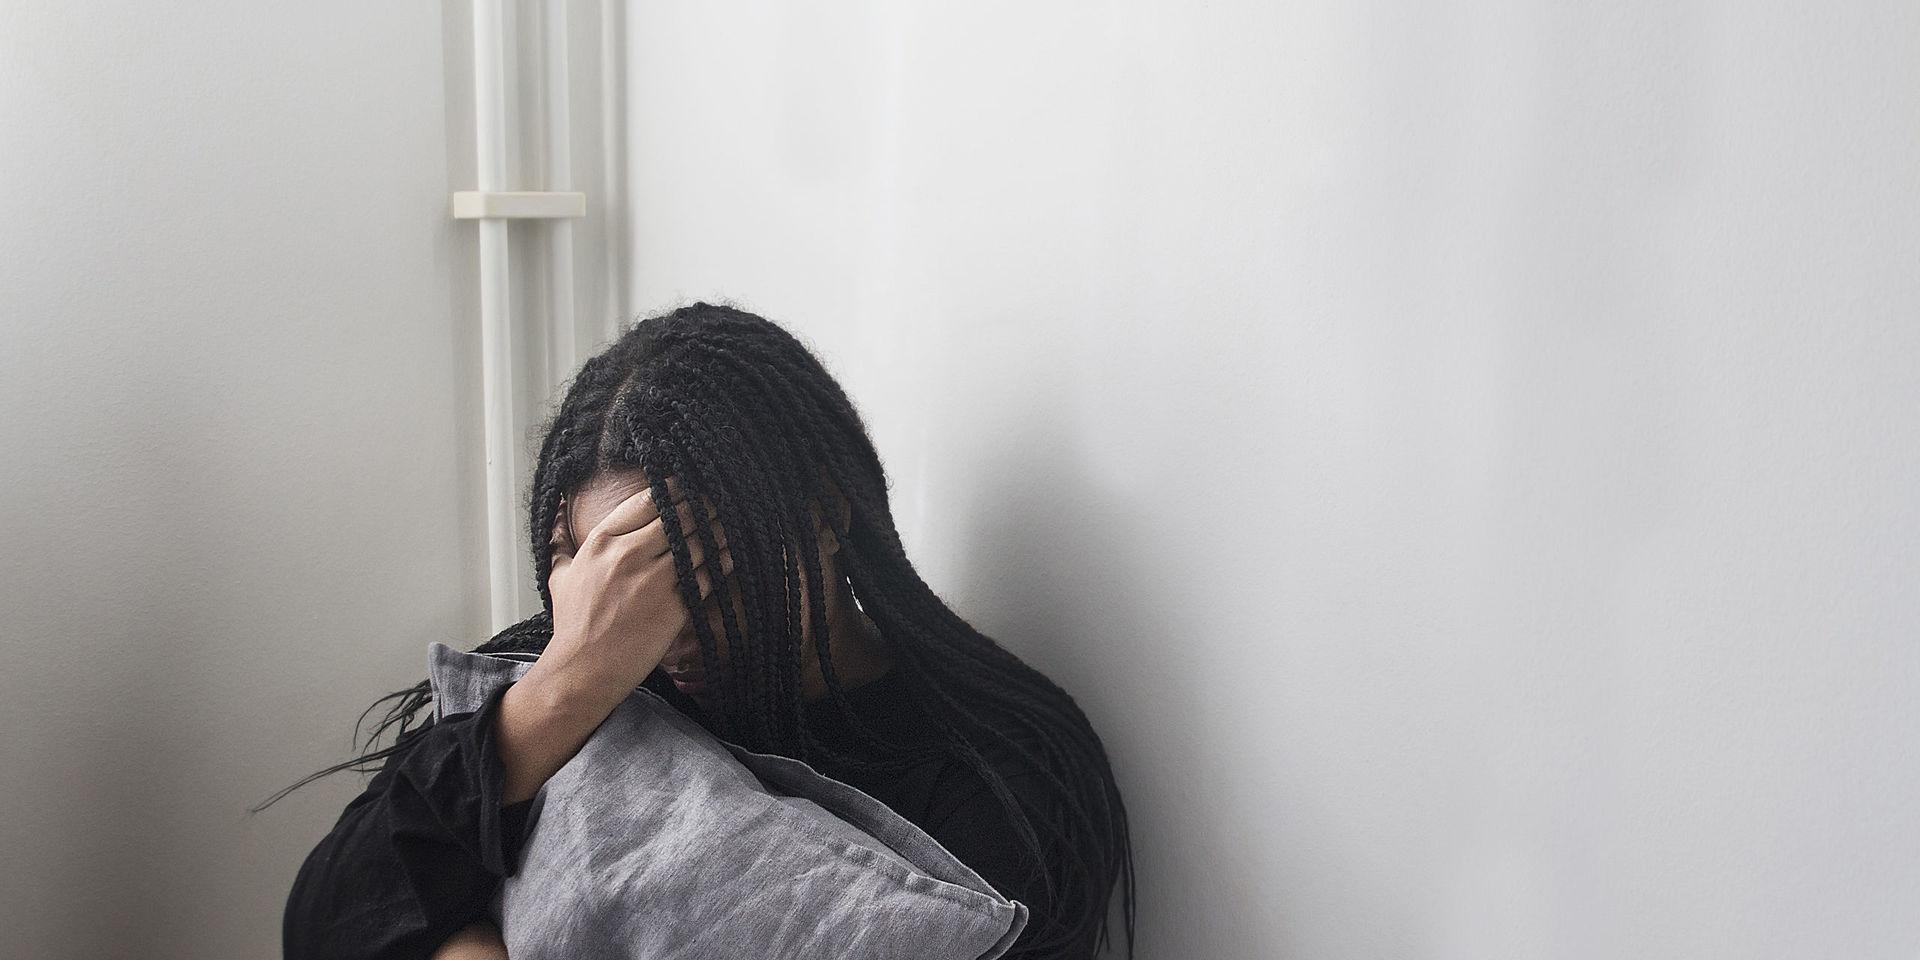 20171115 - Ung kvinna som lider av psykisk ohälsa.
Foto: Isabell Höjman / TT / kod 11711